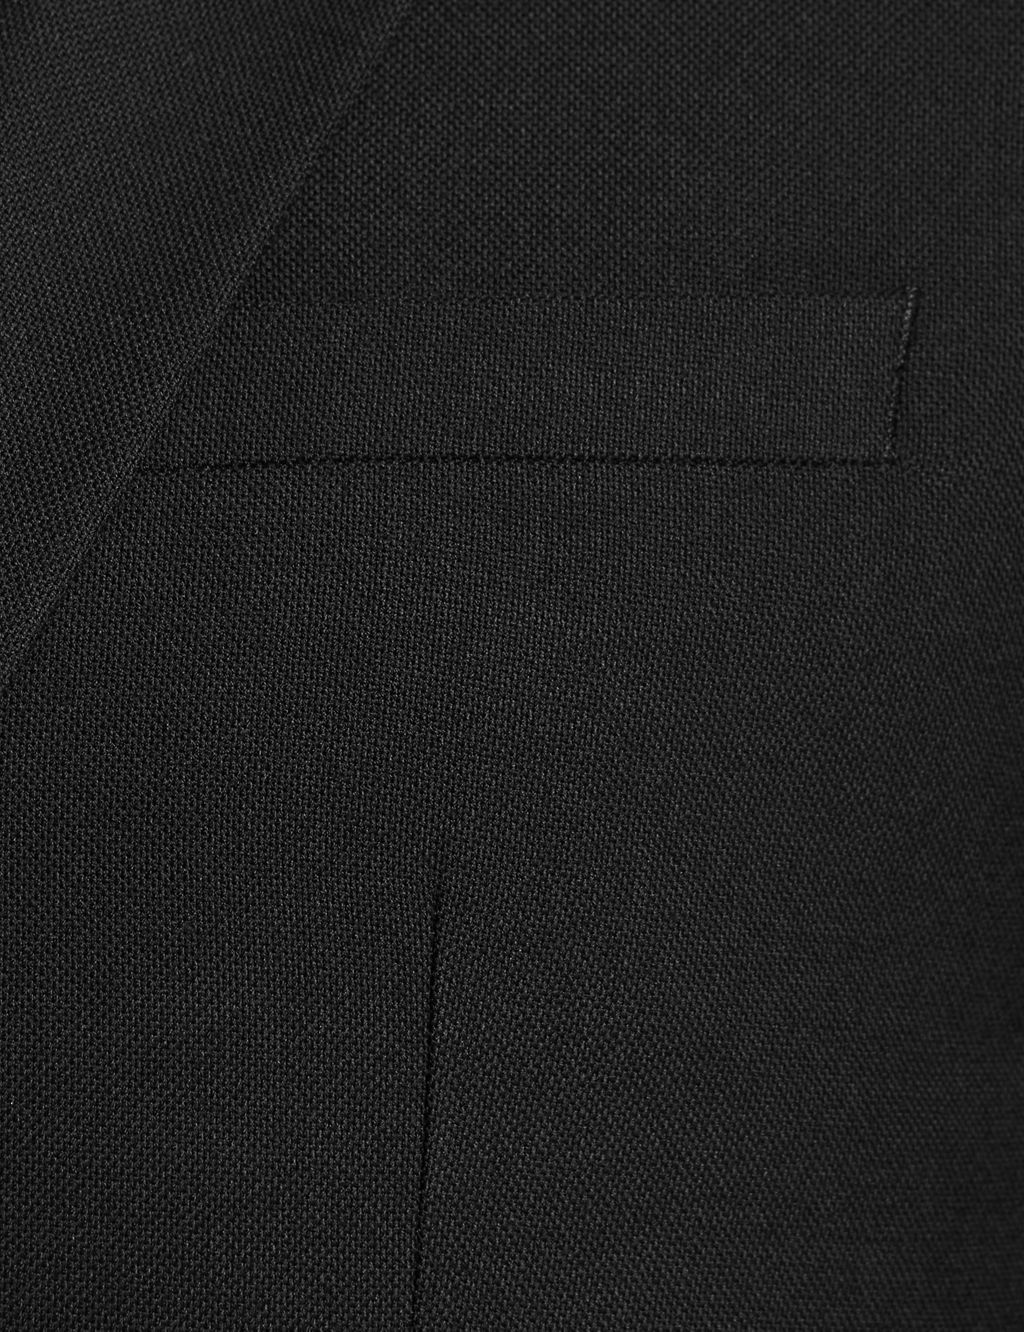 Black Slim Fit Jacket 5 of 8